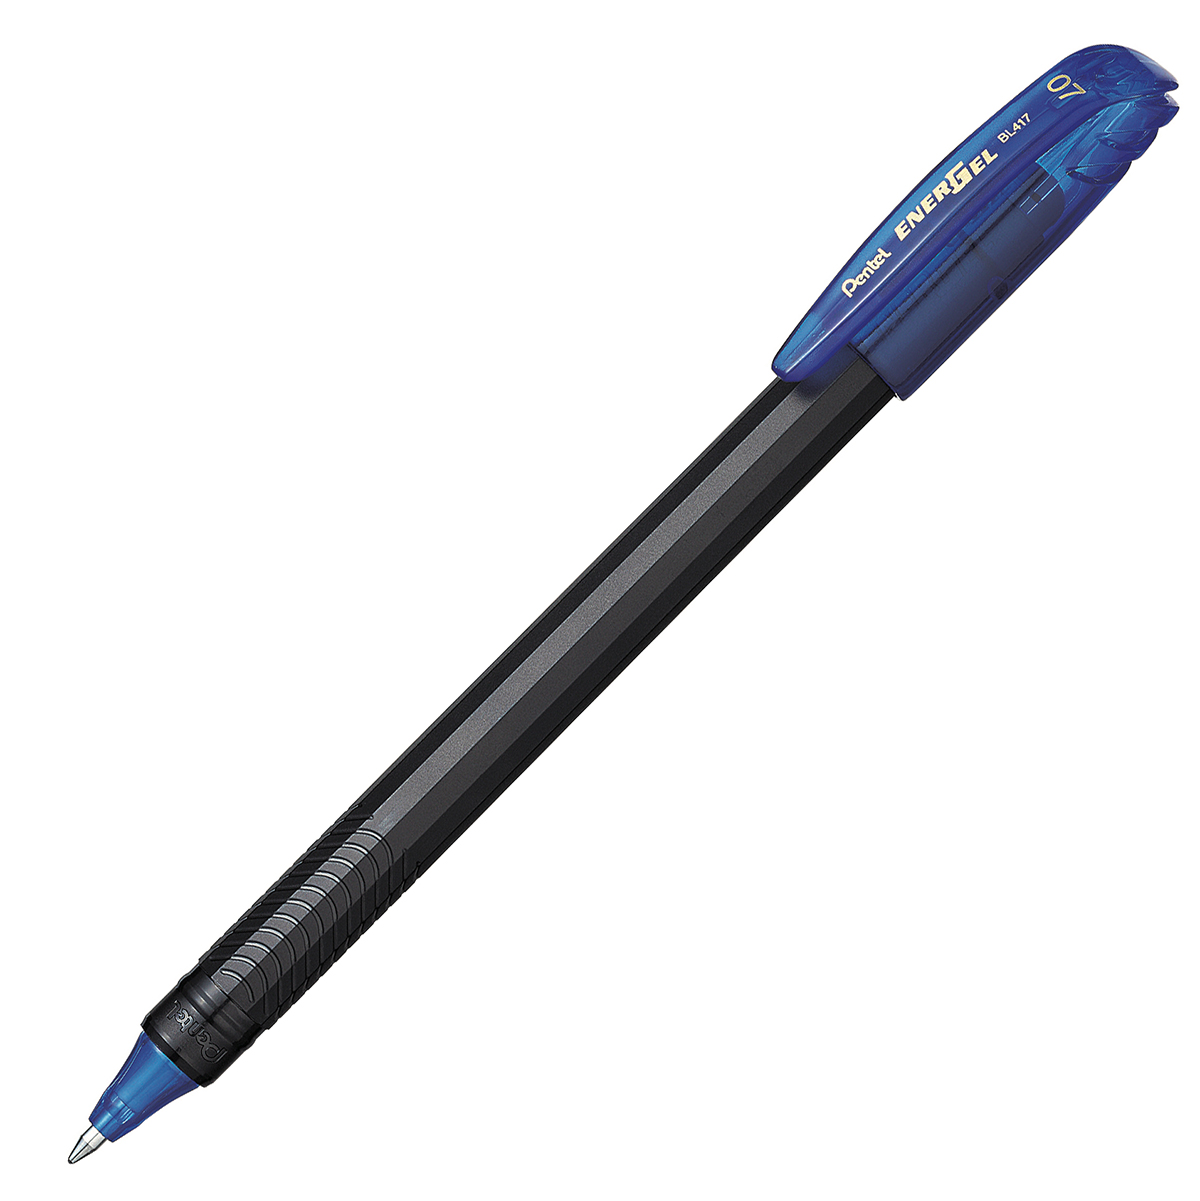 Bolígrafo Pentel energel stick punto 0.7 Bolígrafo Pentel energel tinta gel color azul, 0.7 mm secado rápido, peso ligero con 12 lados, hecho de 62% material reciclado. la tapa indica el color de la tinta                                                                                             mm (mediano) tinta azul, 1 pieza         - BL417-C